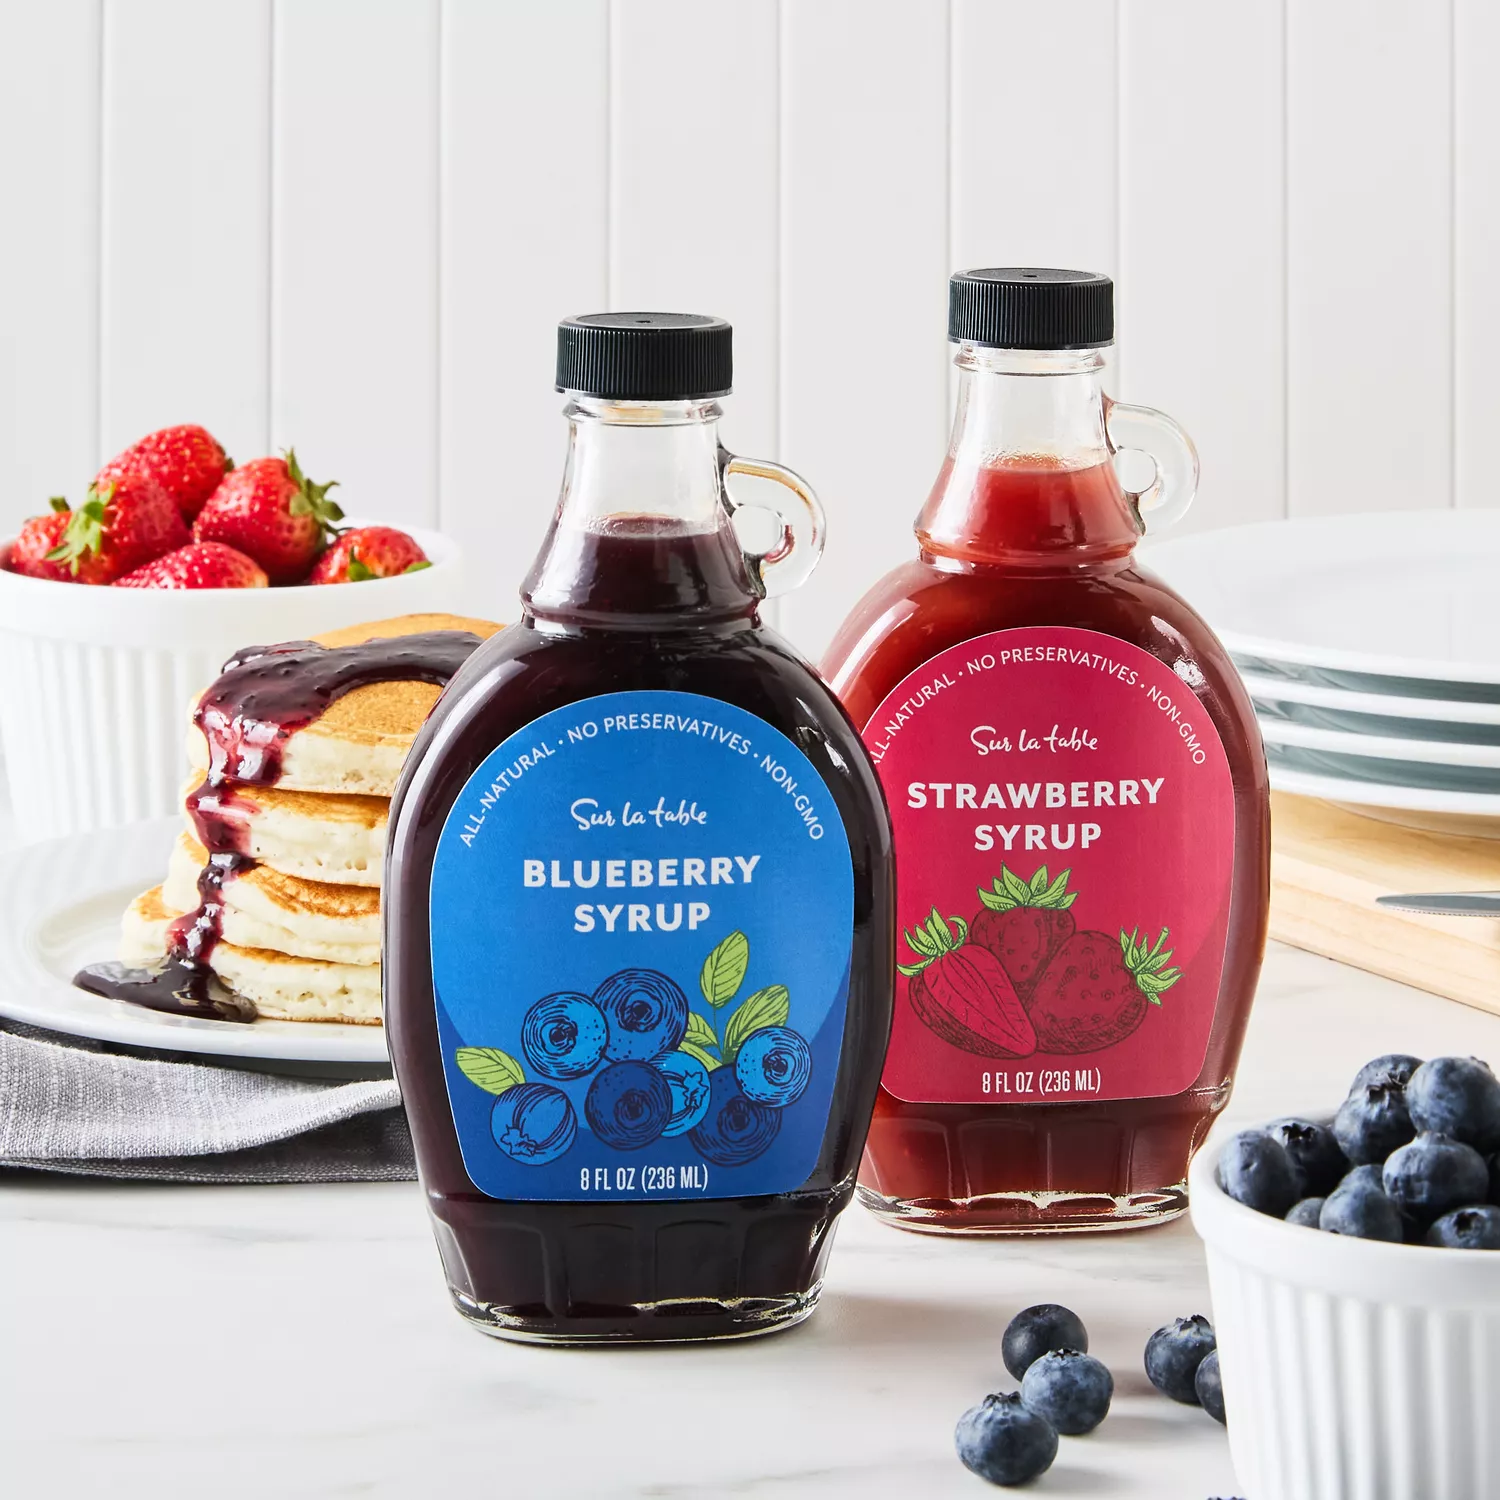 Sur La Table Blueberry Syrup